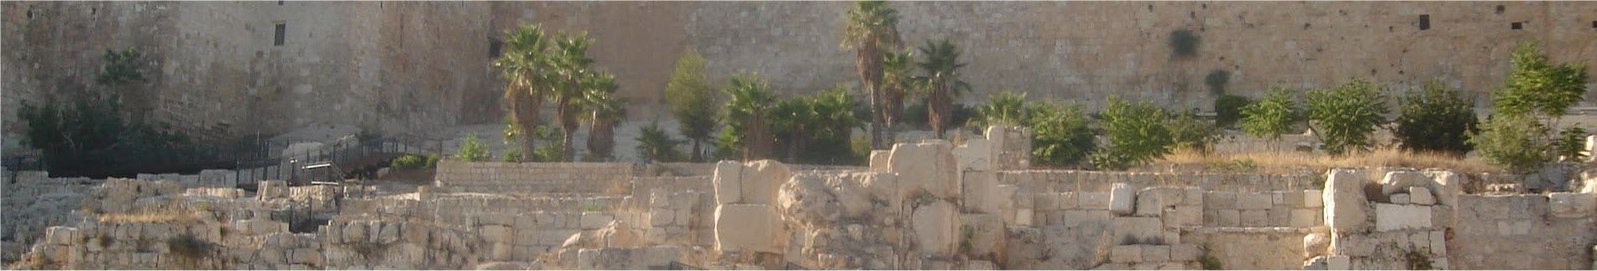 Location of Solomon's Temple